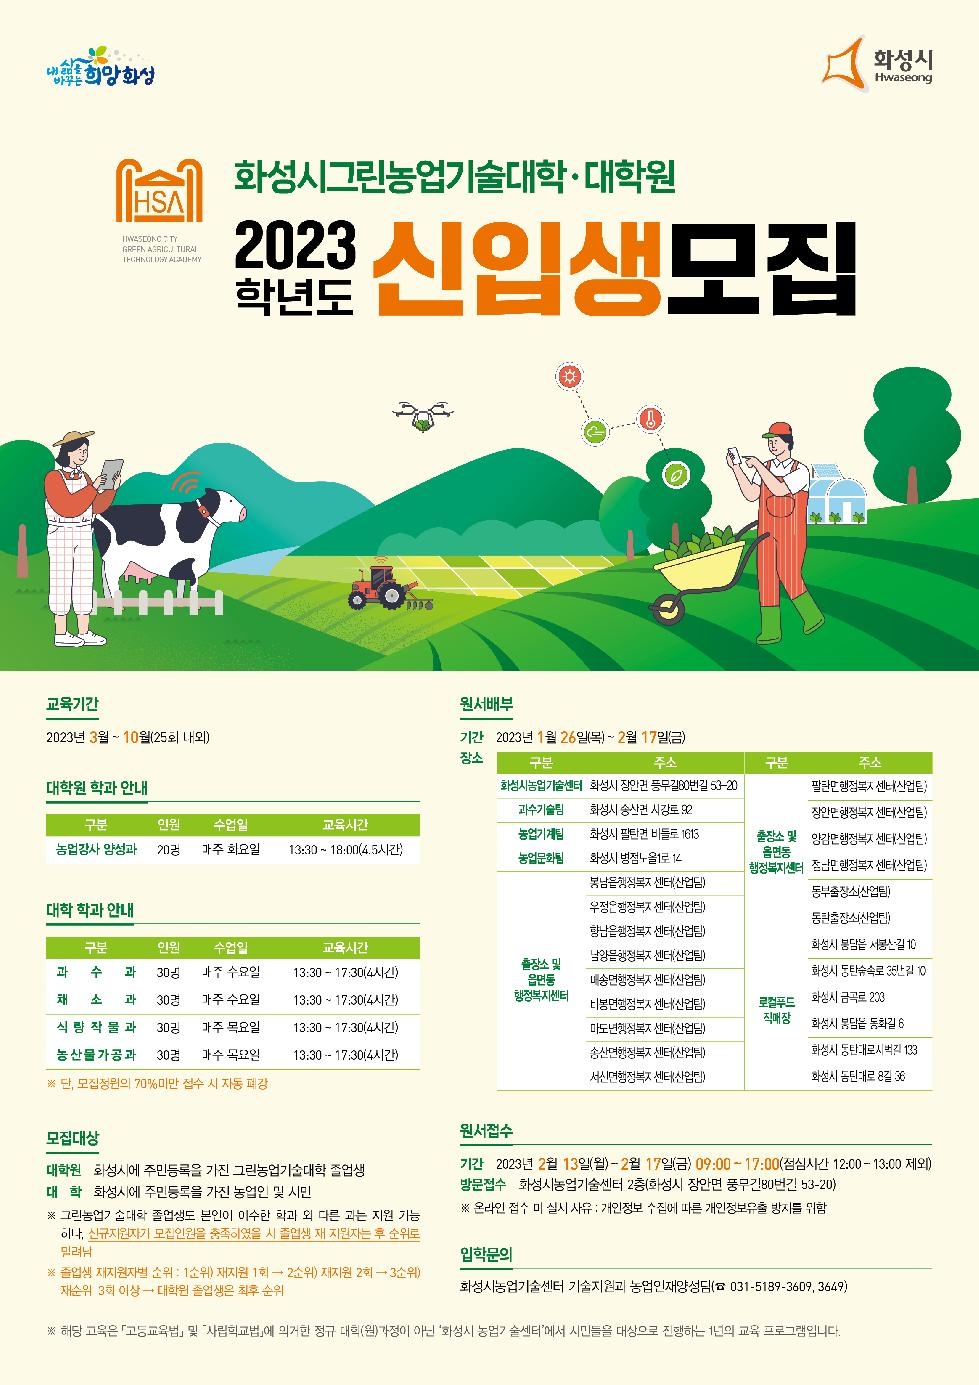 화성시 그린농업기술대학(원)신입생 모집